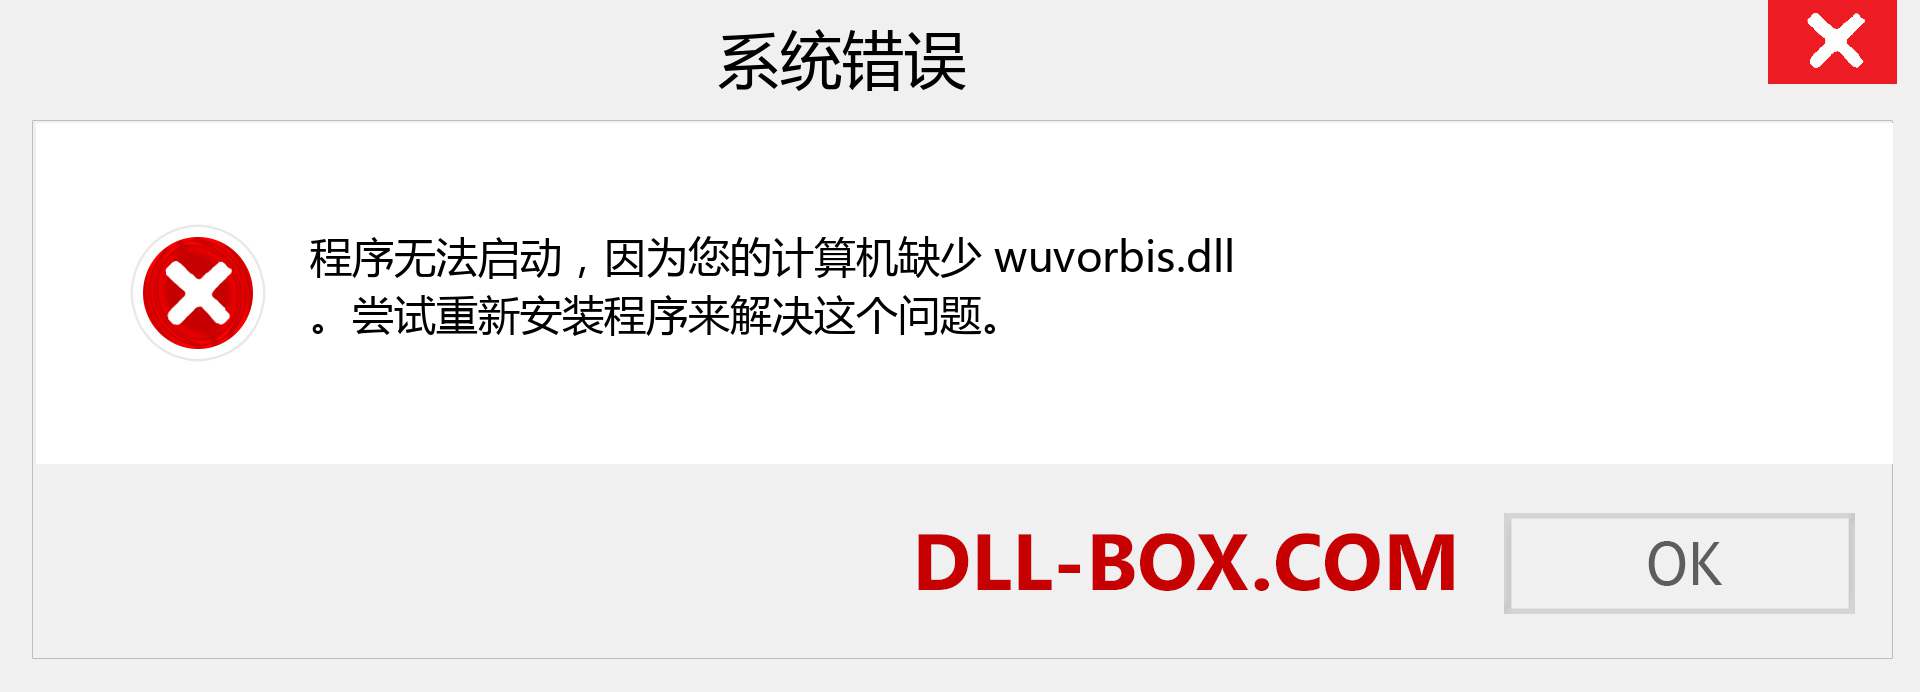 wuvorbis.dll 文件丢失？。 适用于 Windows 7、8、10 的下载 - 修复 Windows、照片、图像上的 wuvorbis dll 丢失错误